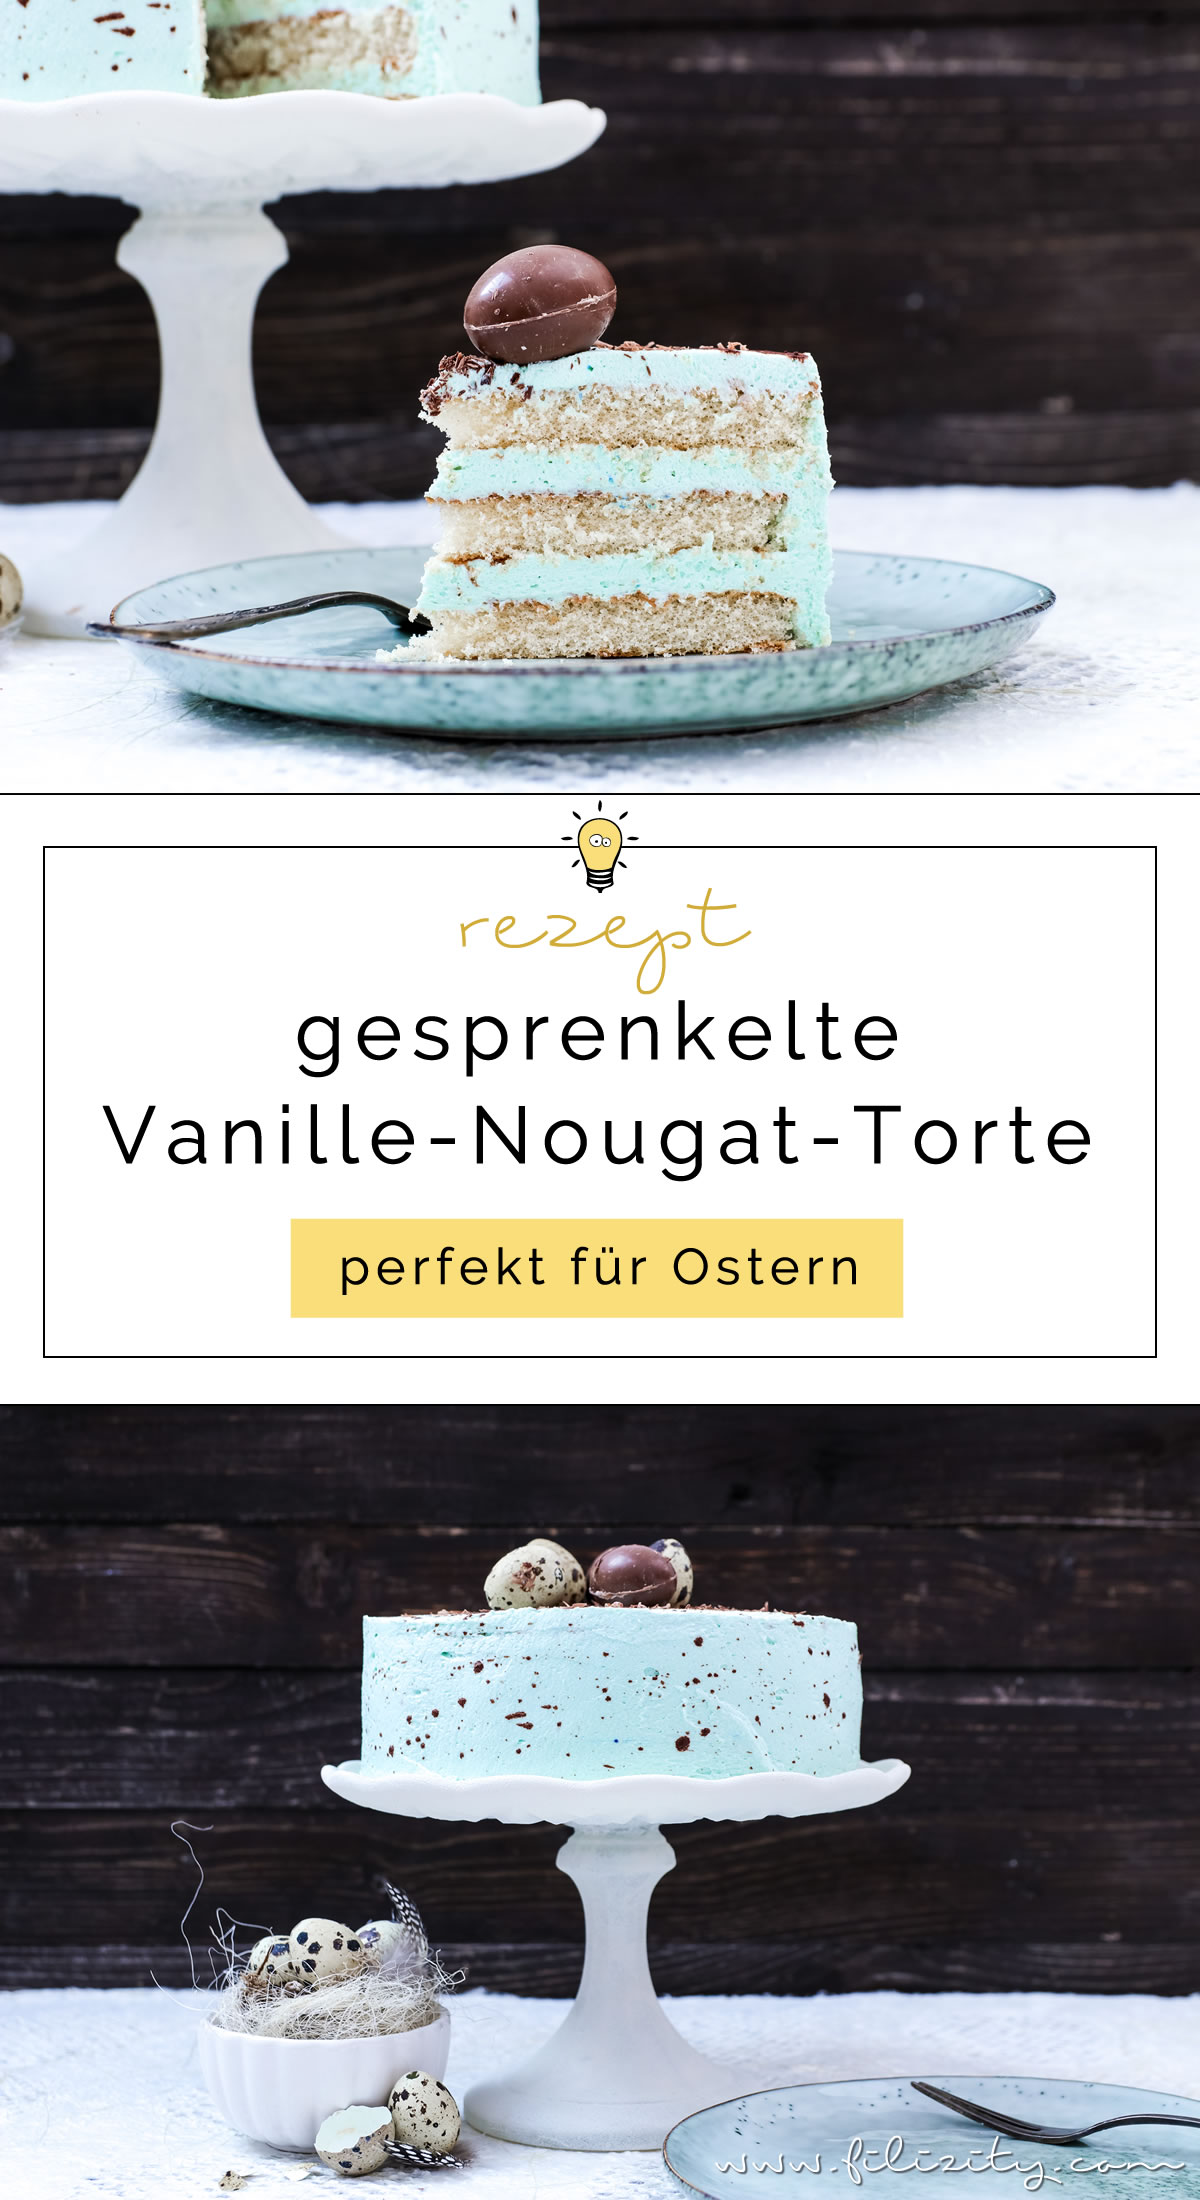 Rezept für eine Gesprenkelte Vanille-Nougat-Torte - perfekt für Ostern | Filizity.com | Food-Blog aus dem Rheinland #ostern #osterrezepte #ostereier